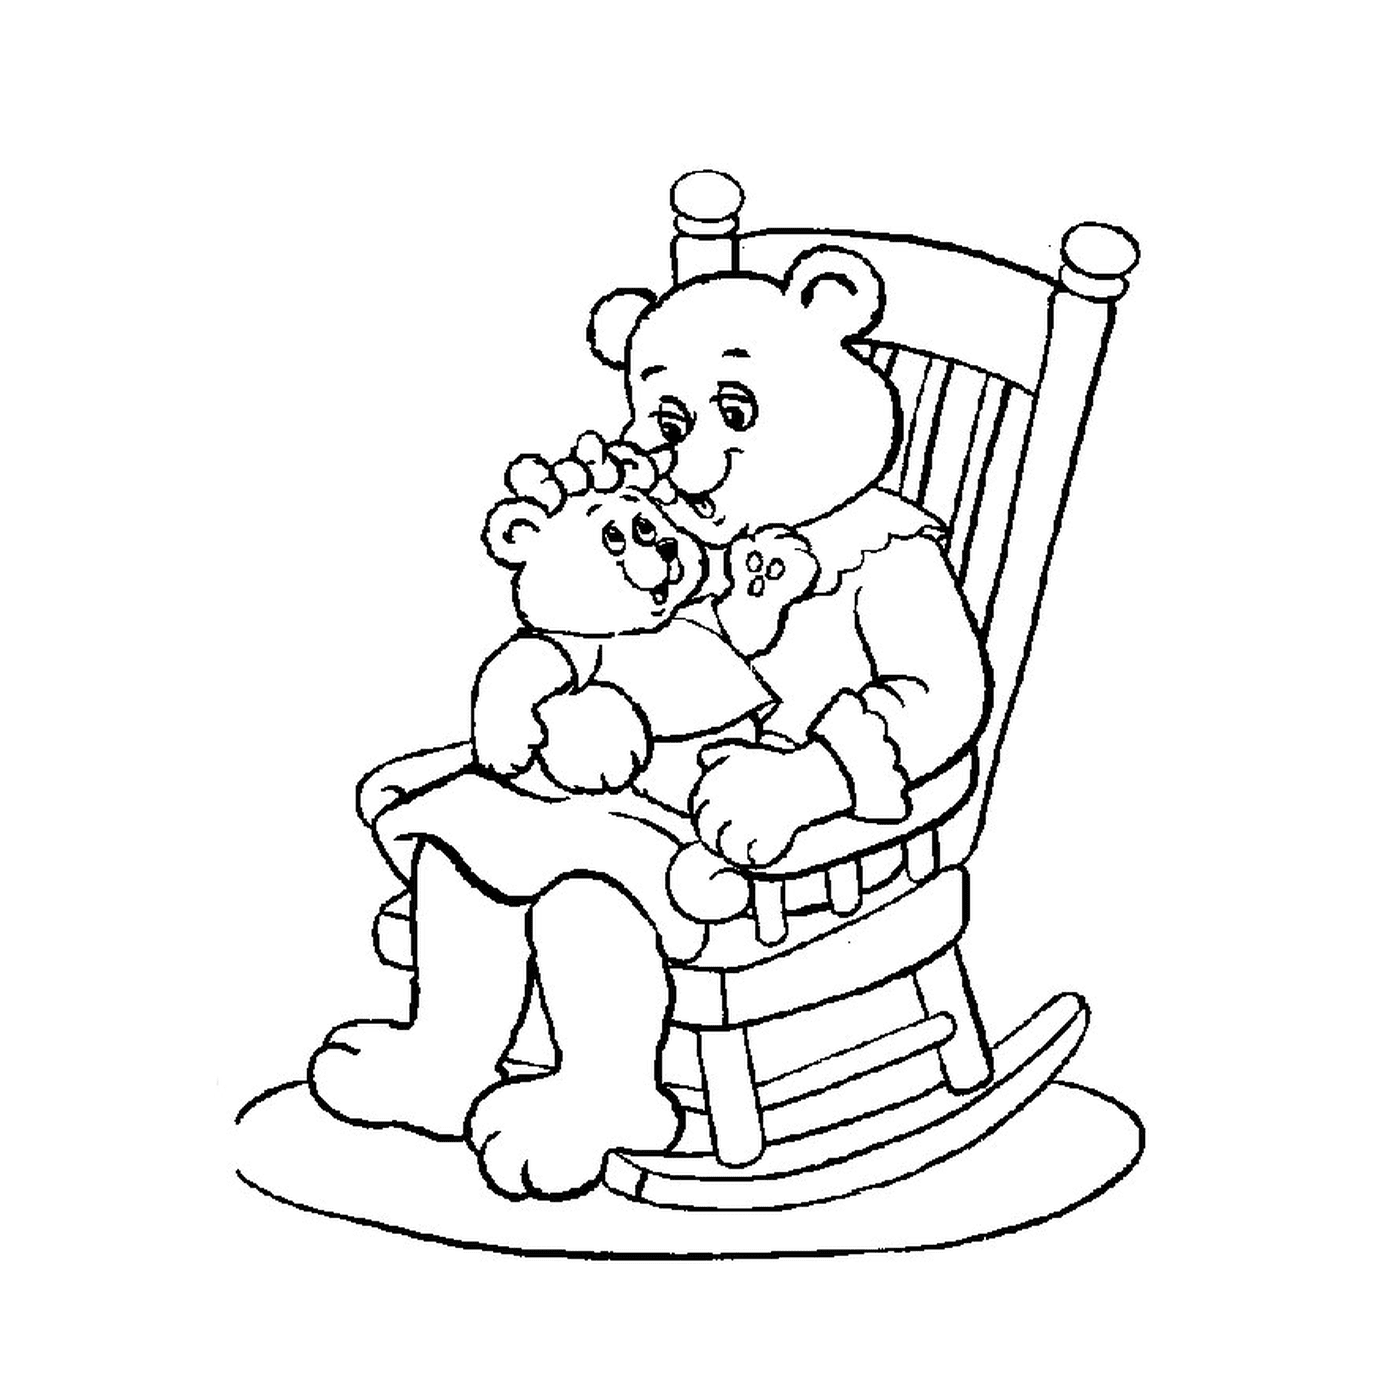  Bär sitzt auf einem Schaukelstuhl und hält einen Bären 